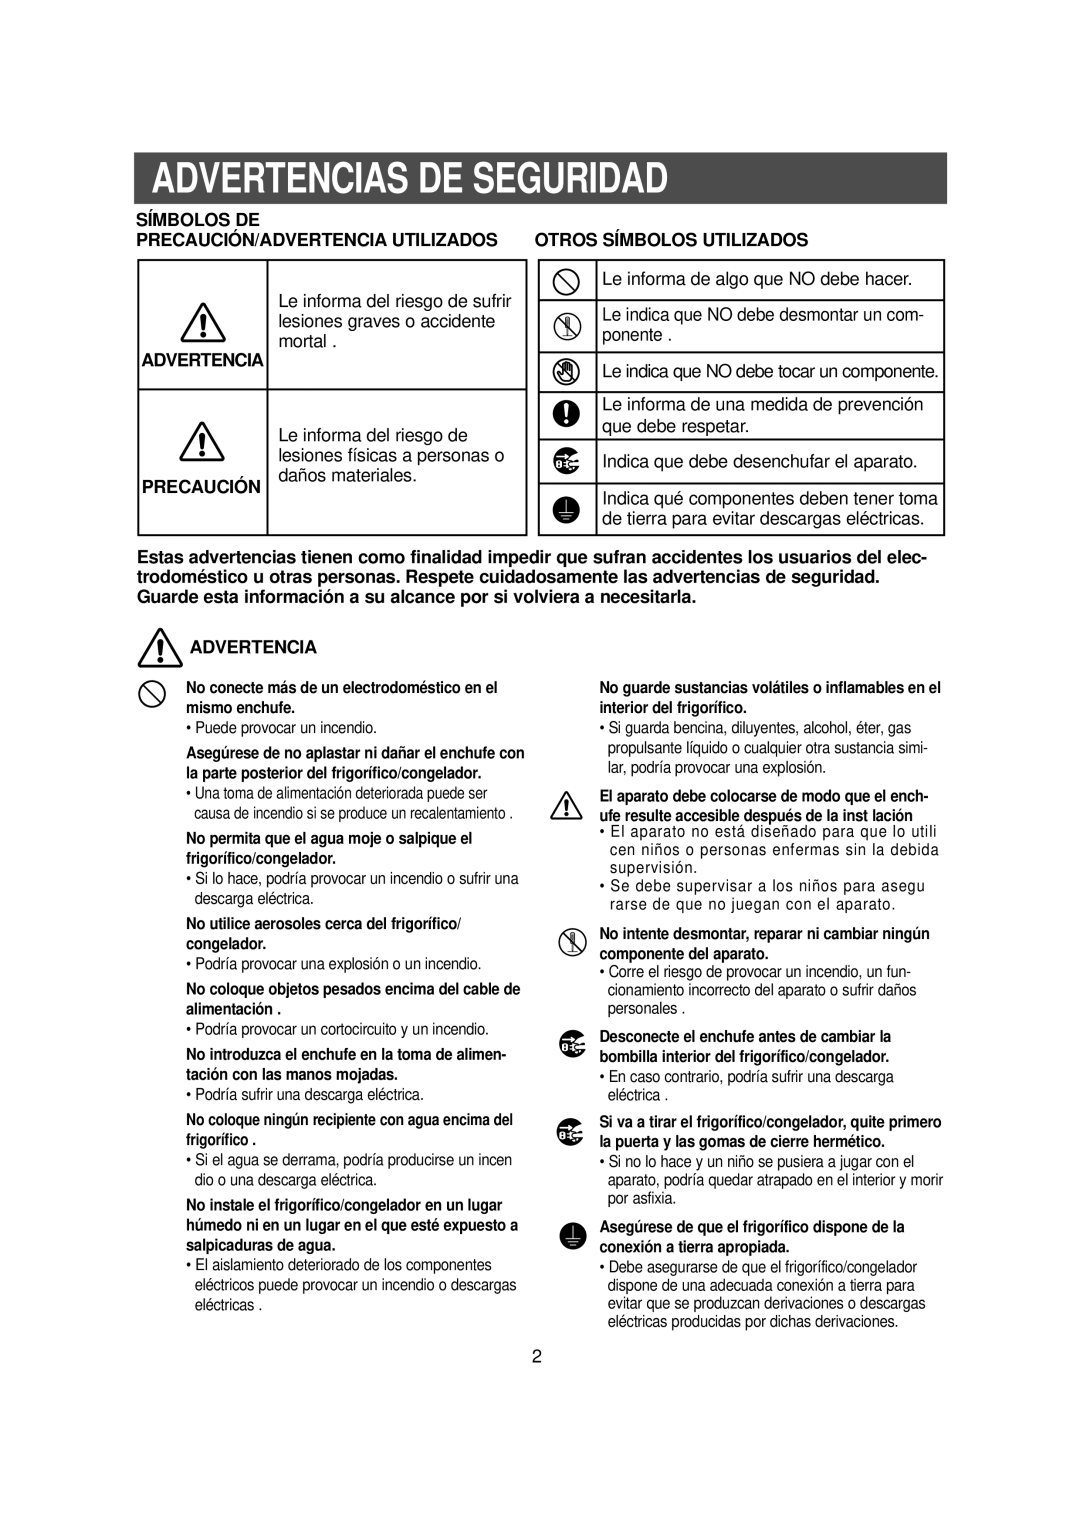 Samsung RS20NCSW1/DOR Advertencias De Seguridad, Símbolos De, Precaución/Advertencia Utilizados Otros Símbolos Utilizados 